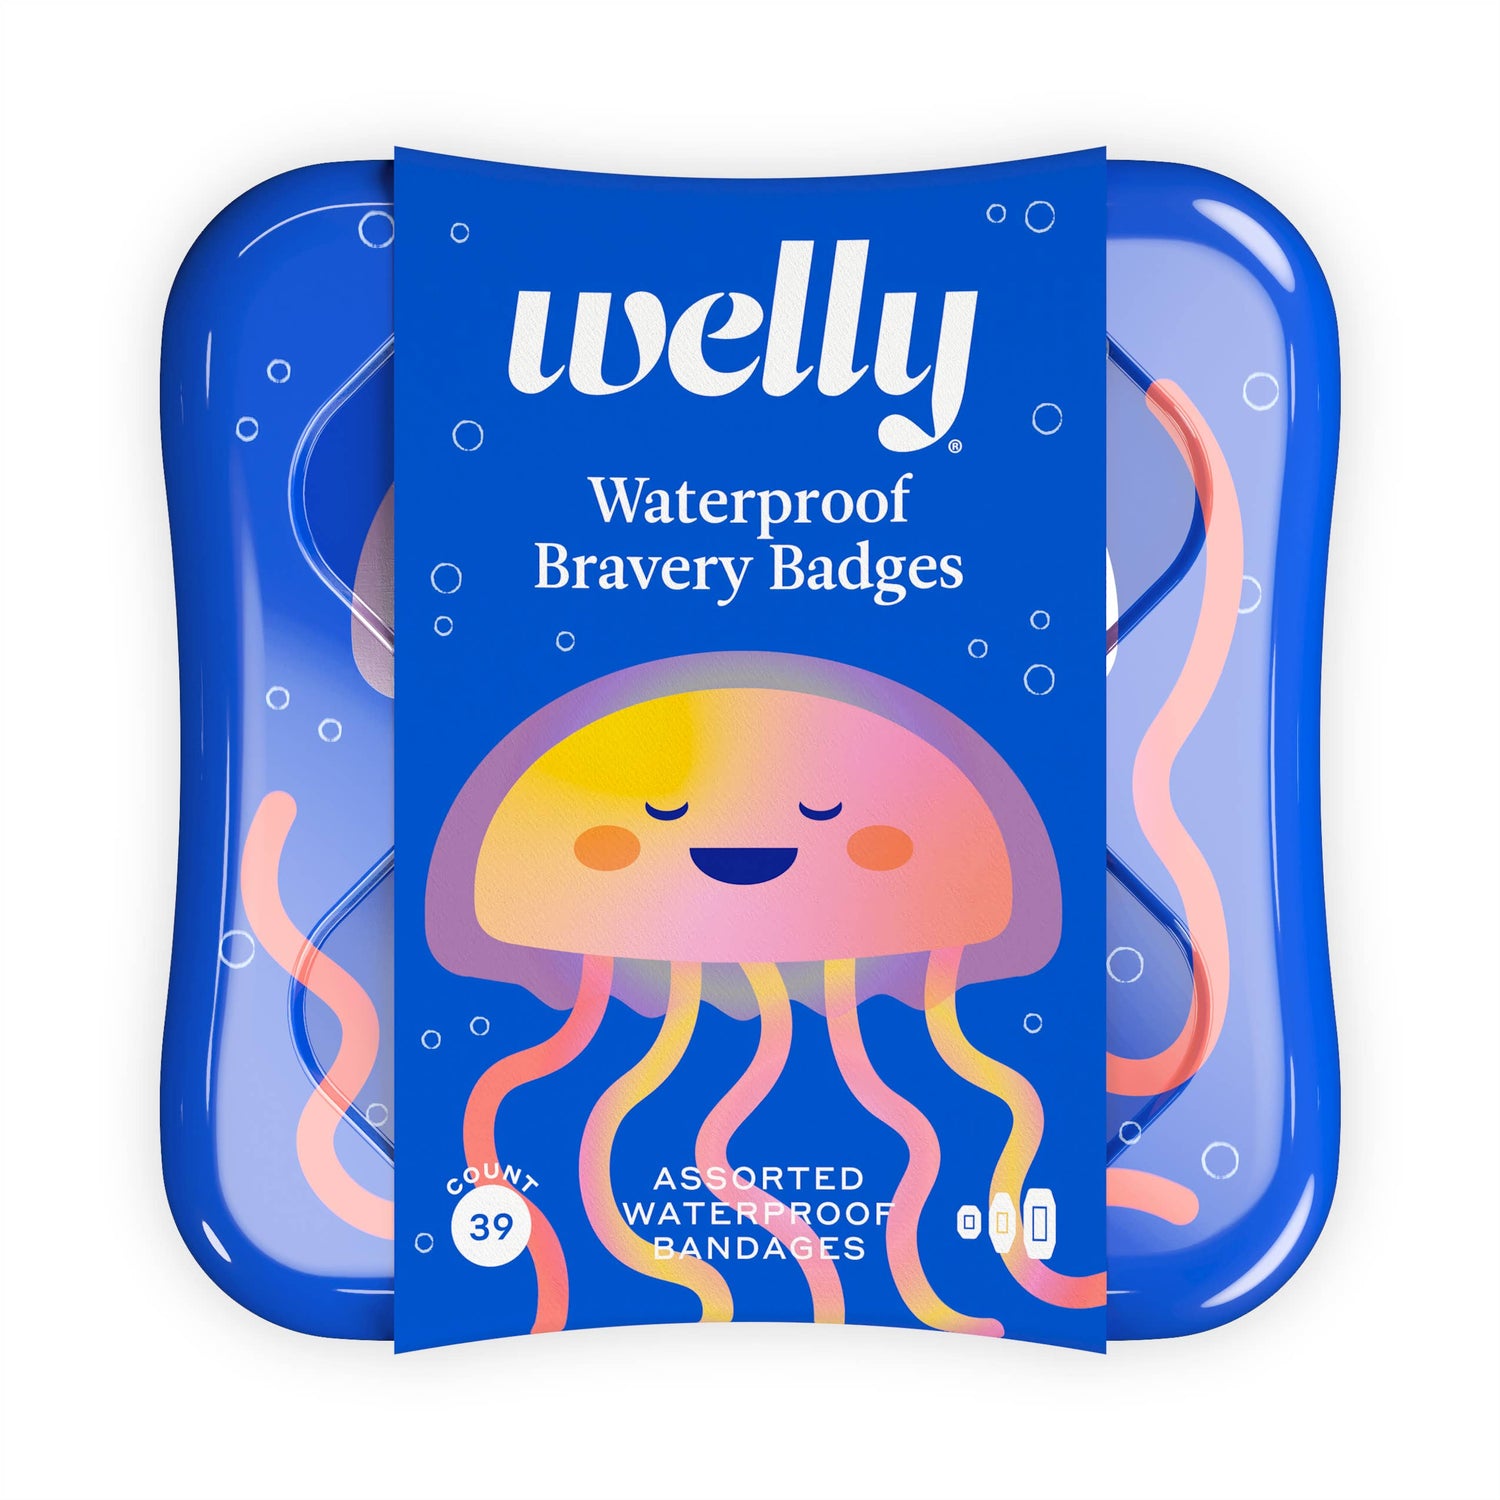 Waterproof Undersea Bravery Badges bandage pack by Welly